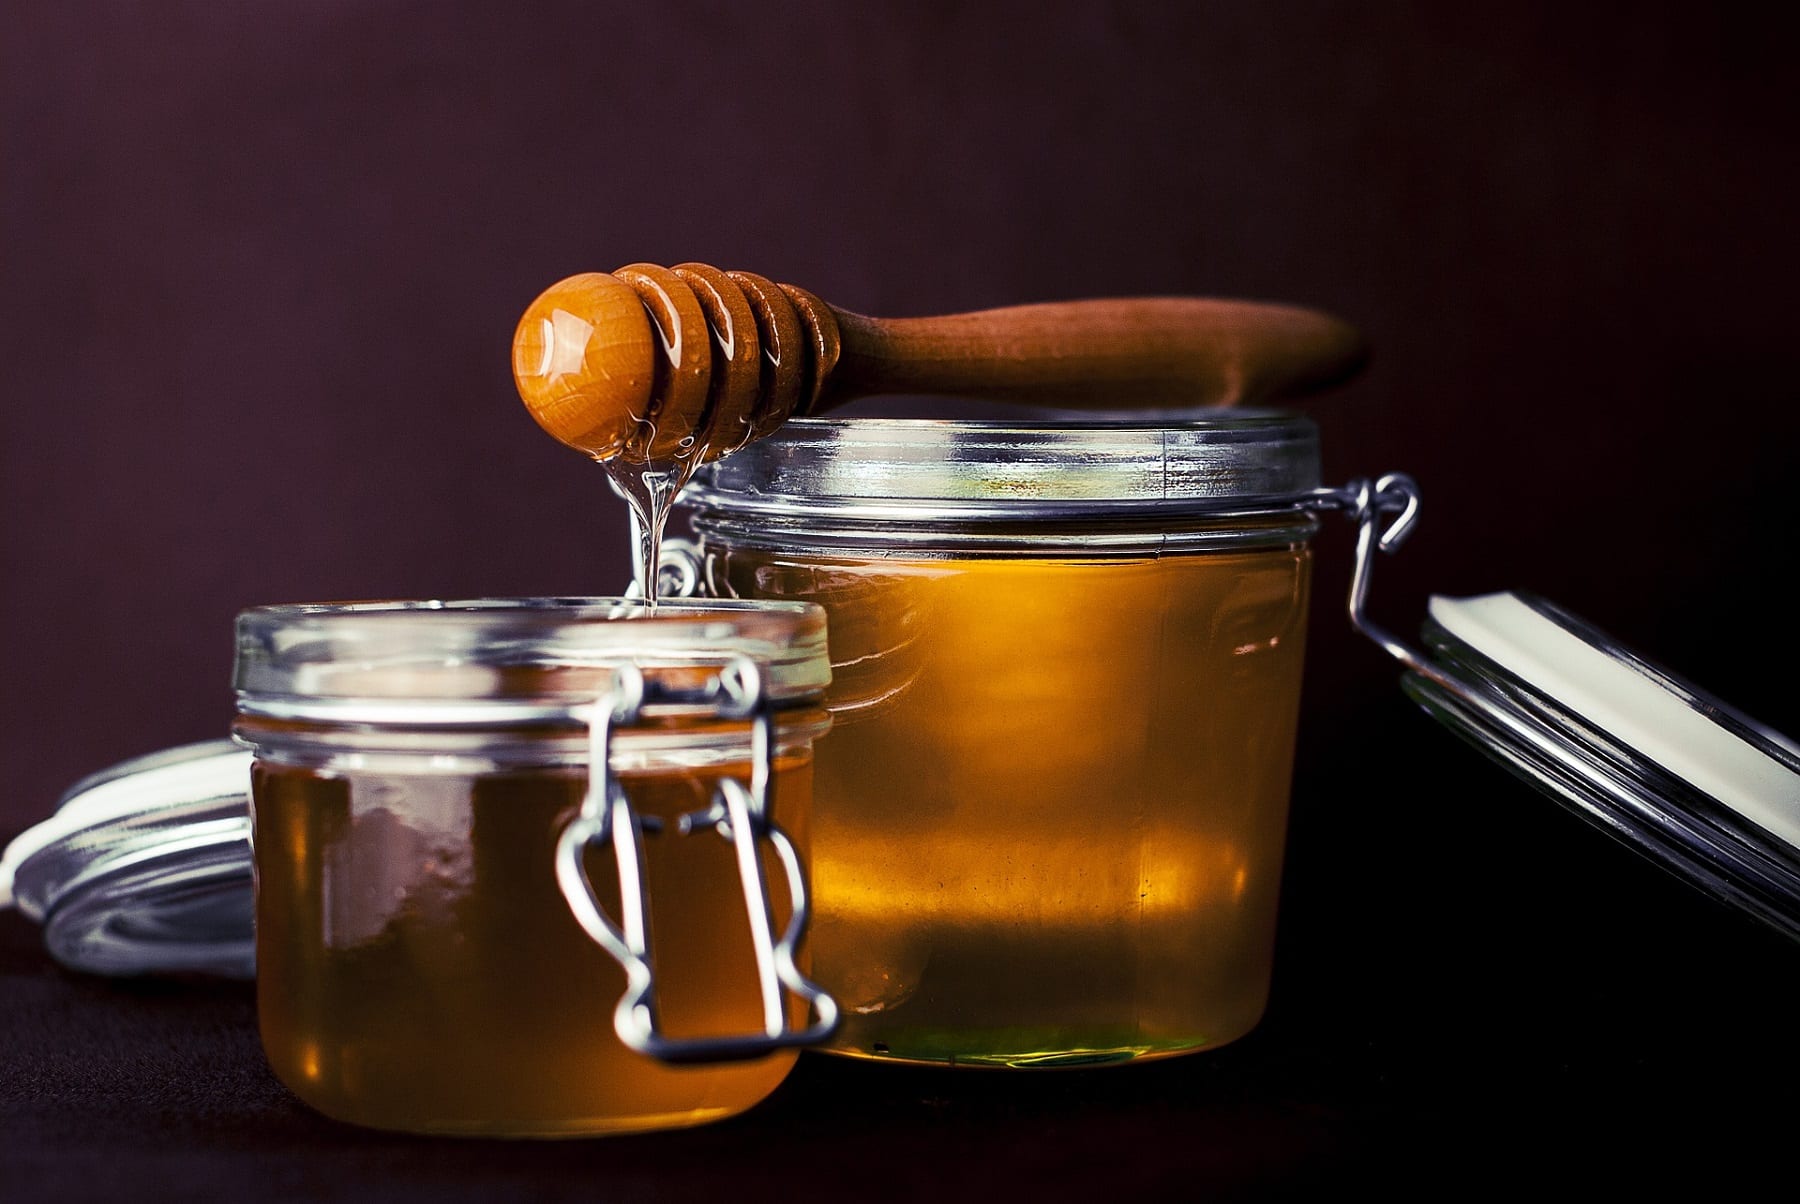 Propiedades de la miel de manuka y cómo tomarla? - Dietetica Ferrer